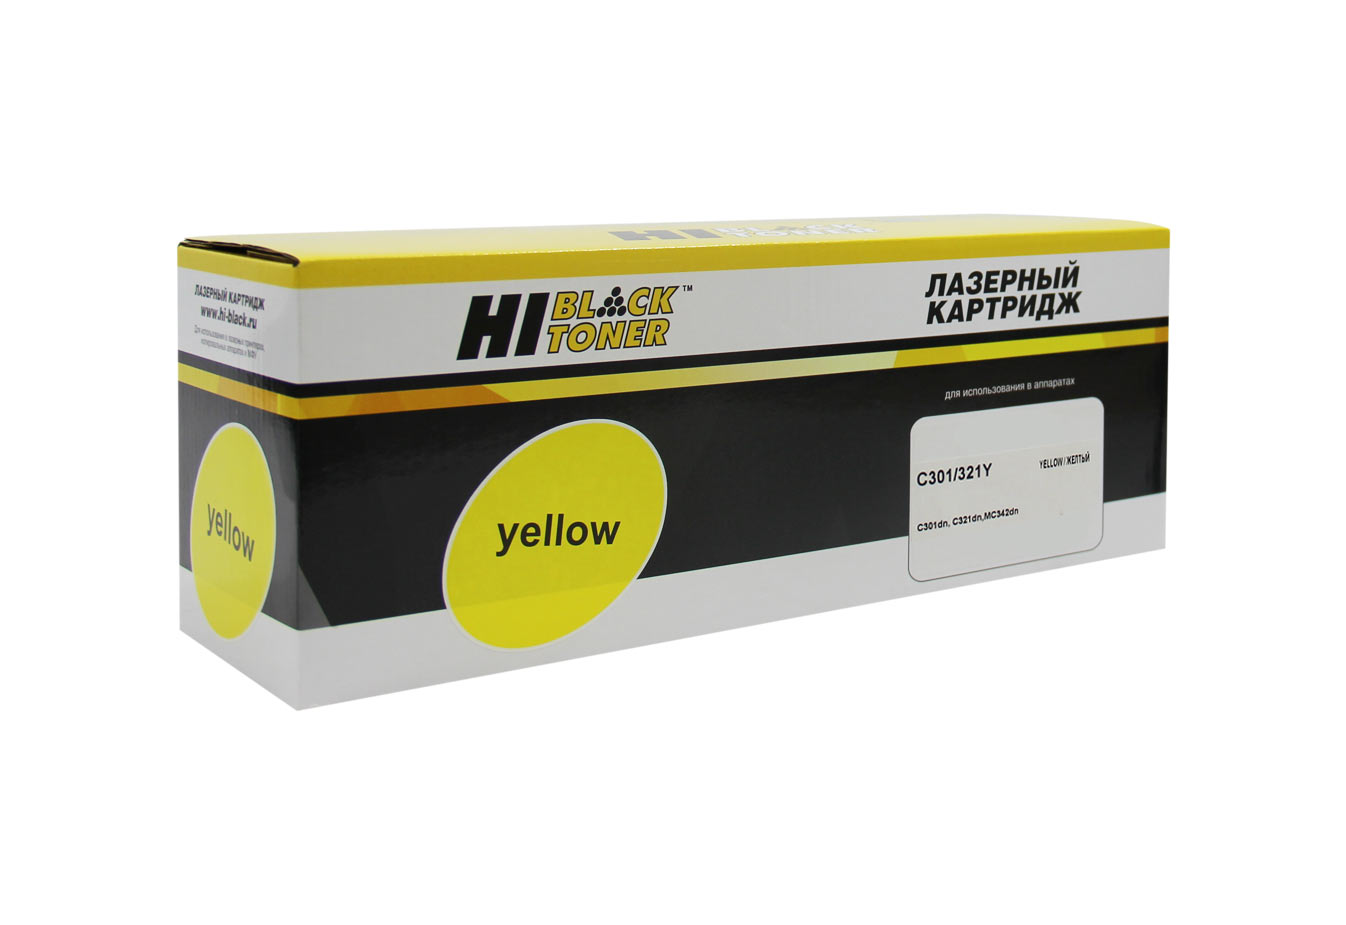 Картридж лазерный Hi-Black HB-44973541 (44973541), желтый 1500 страниц, совместимый, для OKI C301DN/C321DN/C310DN/C330DN/MC351DN